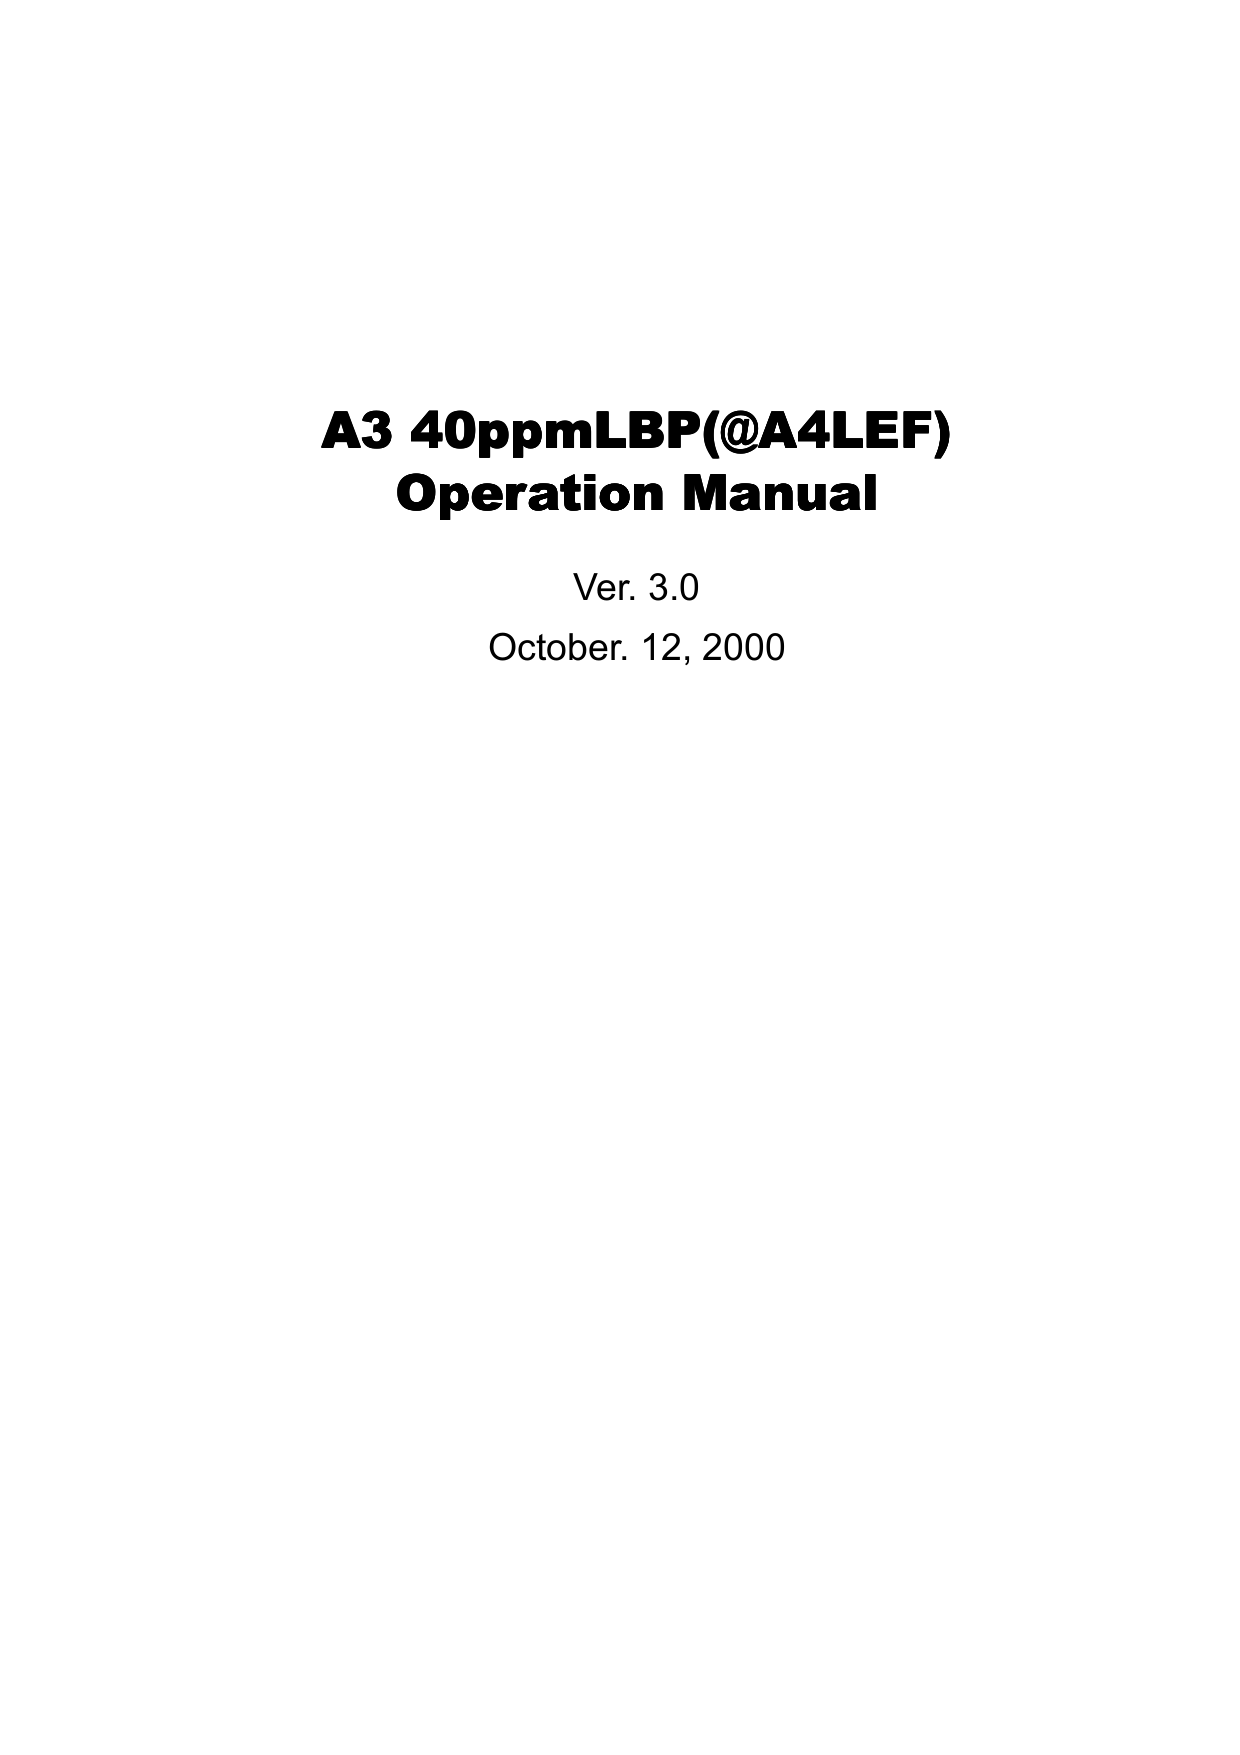 A3 40ppmLBP(@A4LEF)A3 40ppmLBP(@A4LEF)A3 40ppmLBP(@A4LEF)A3 40ppmLBP(@A4LEF)Operation ManualOperation ManualOperation ManualOperation ManualVer. 3.0October. 12, 2000